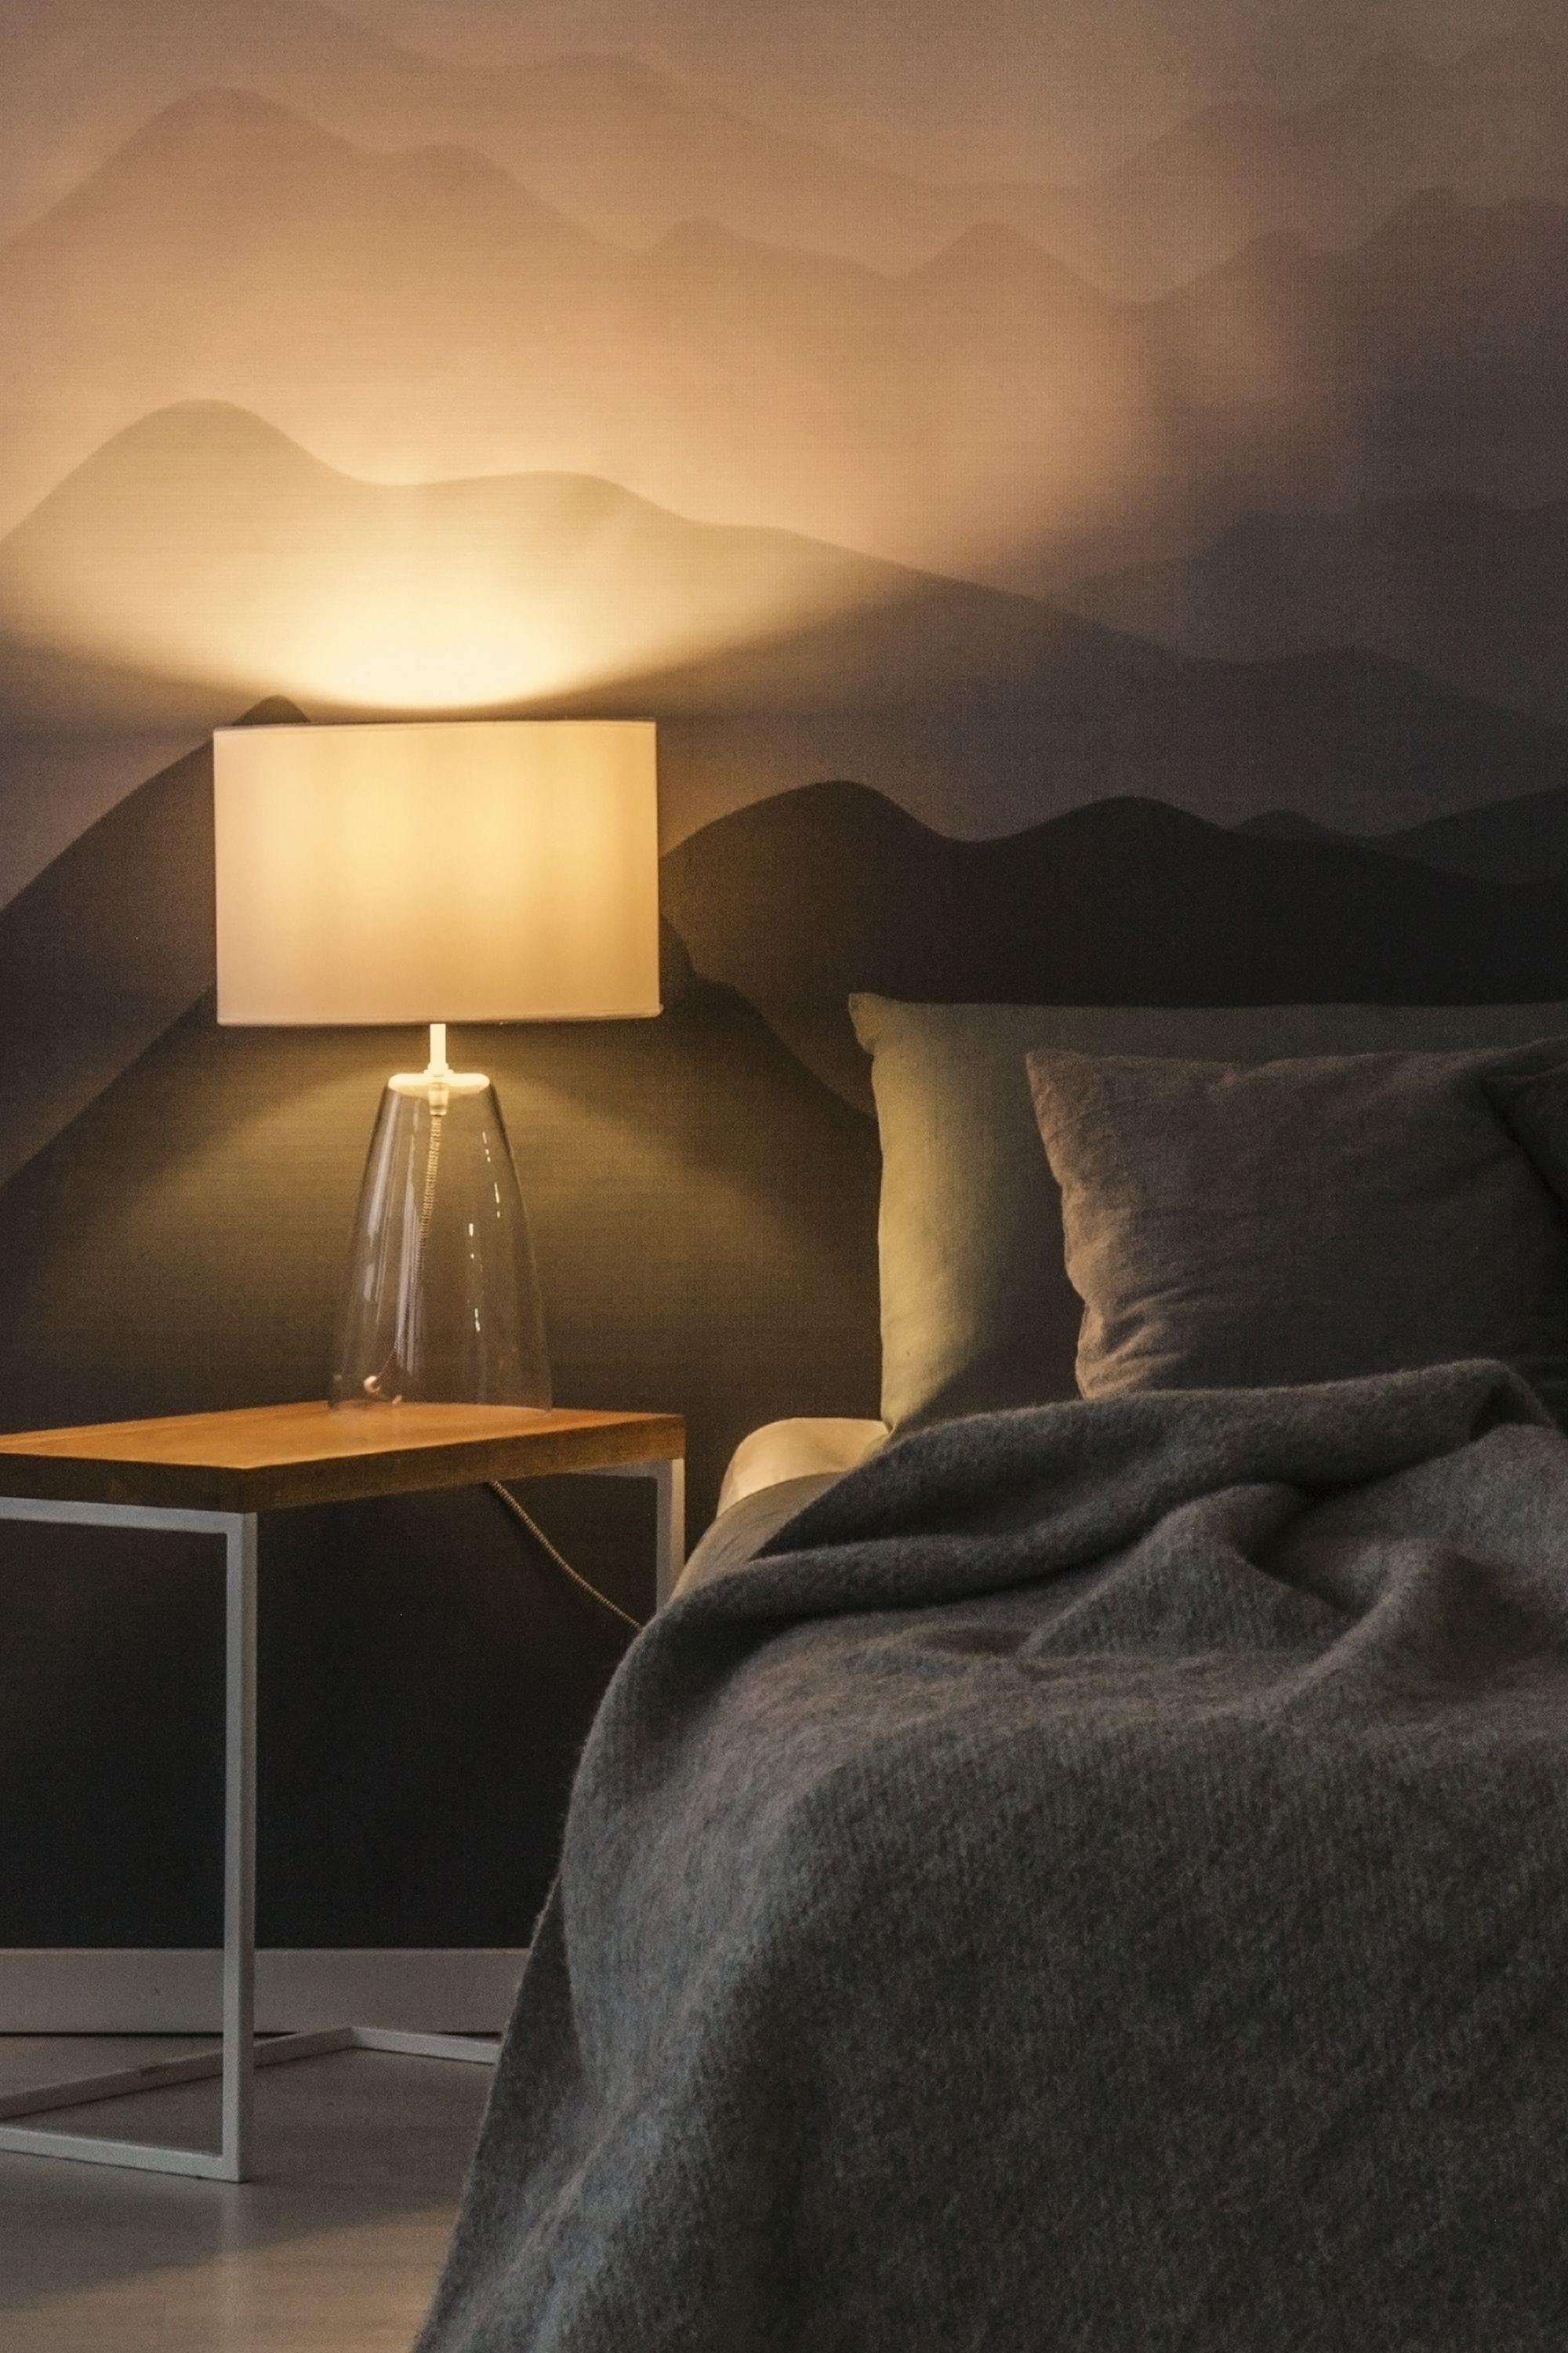 デンマーク発“ヒュッゲ”から学ぶ、究極のベッドルームを作る5つの方法